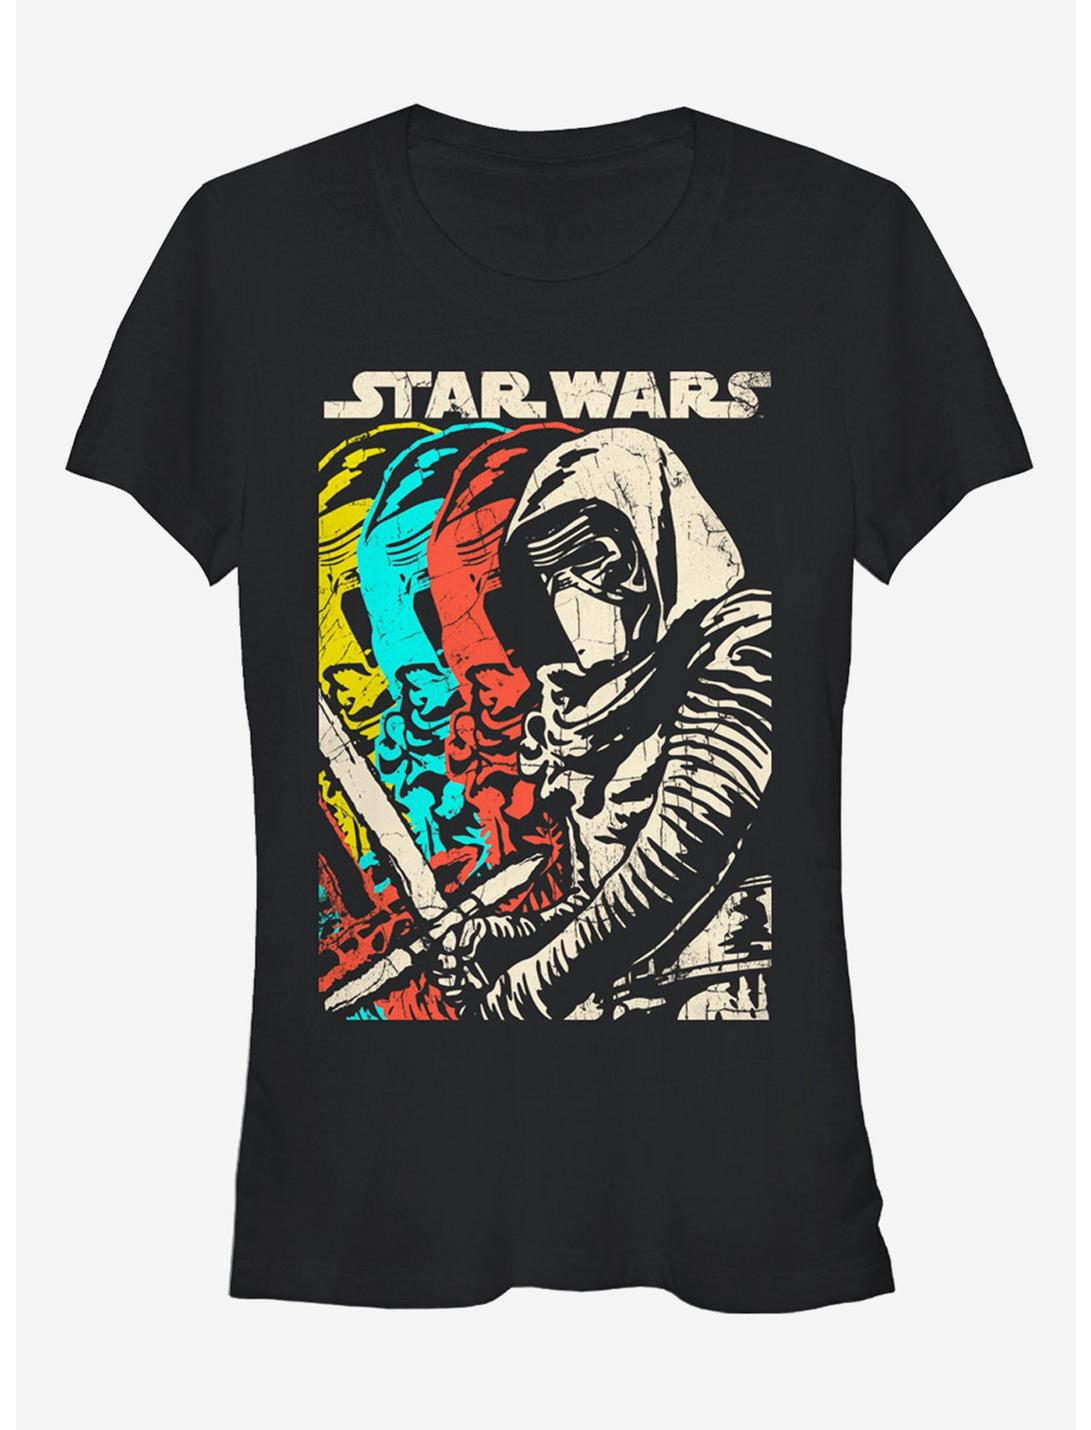 Star Wars Episode VII The Force Awakens Kylo Ren Copies Girls T-Shirt, BLACK, hi-res